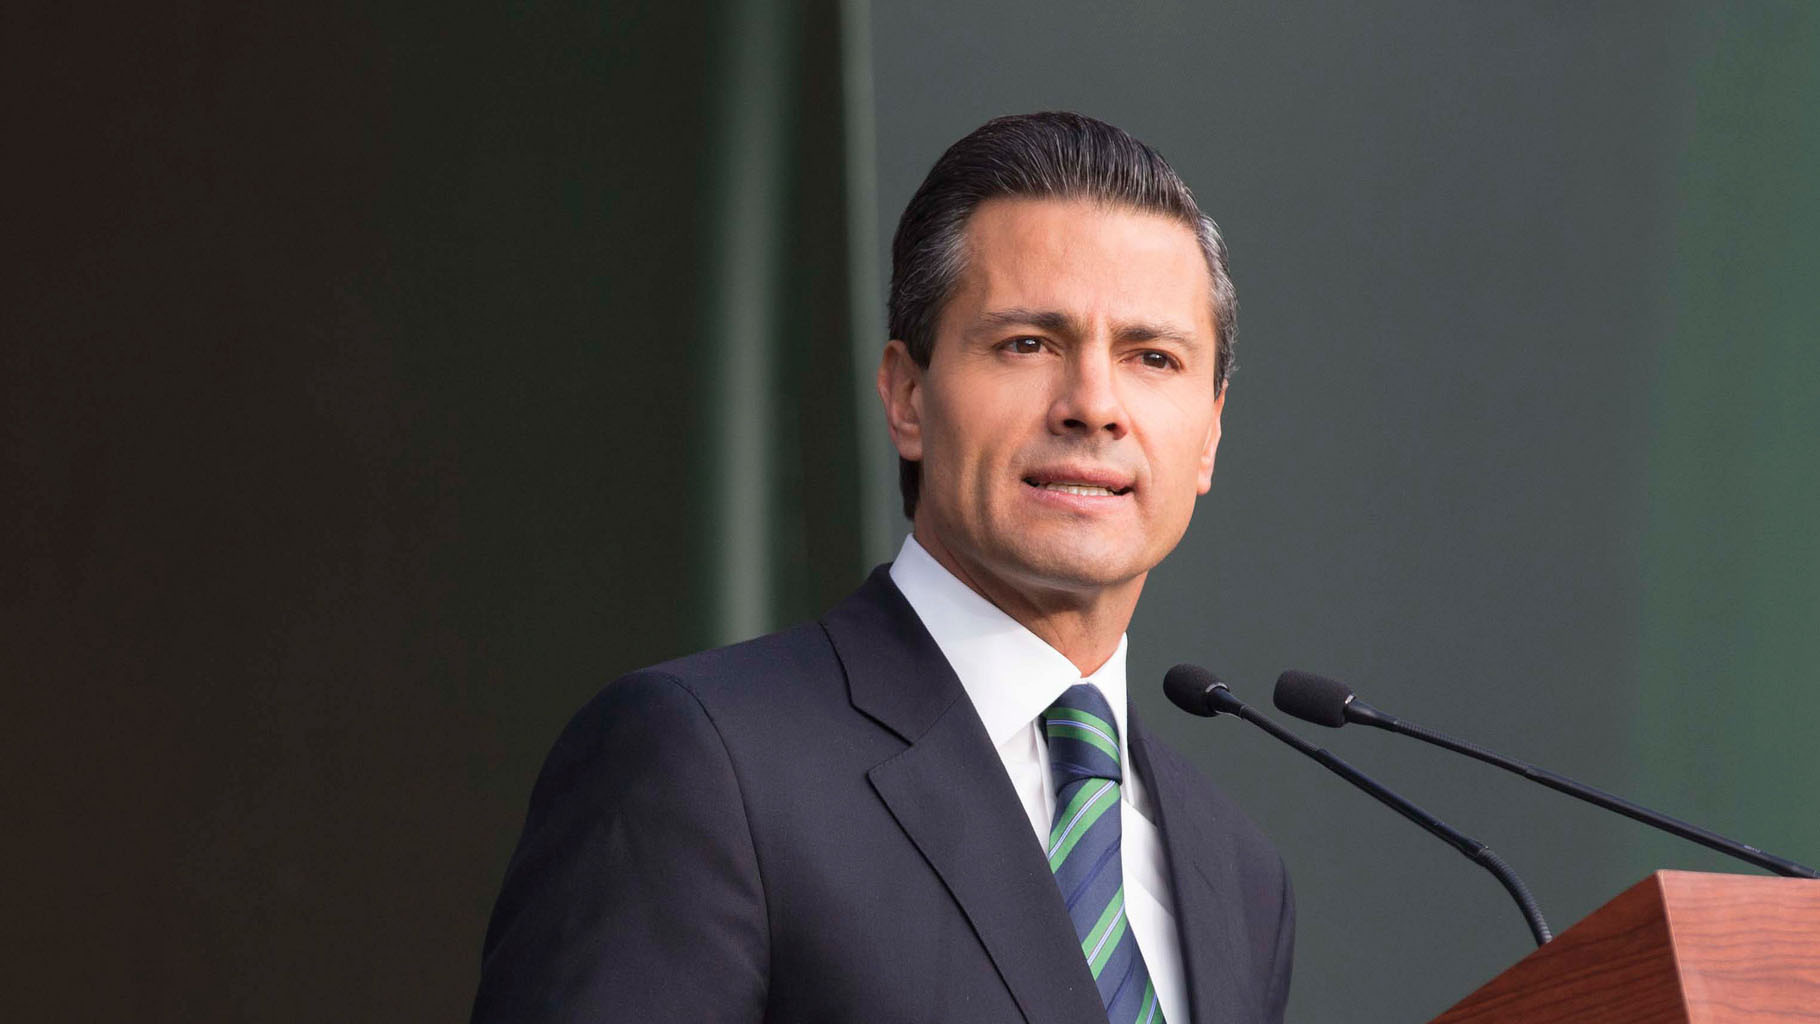 El mandatario mexicano manifestó su preocupación por el hecho al que consideró un atentado contra la democracia y la tarea del parlamento